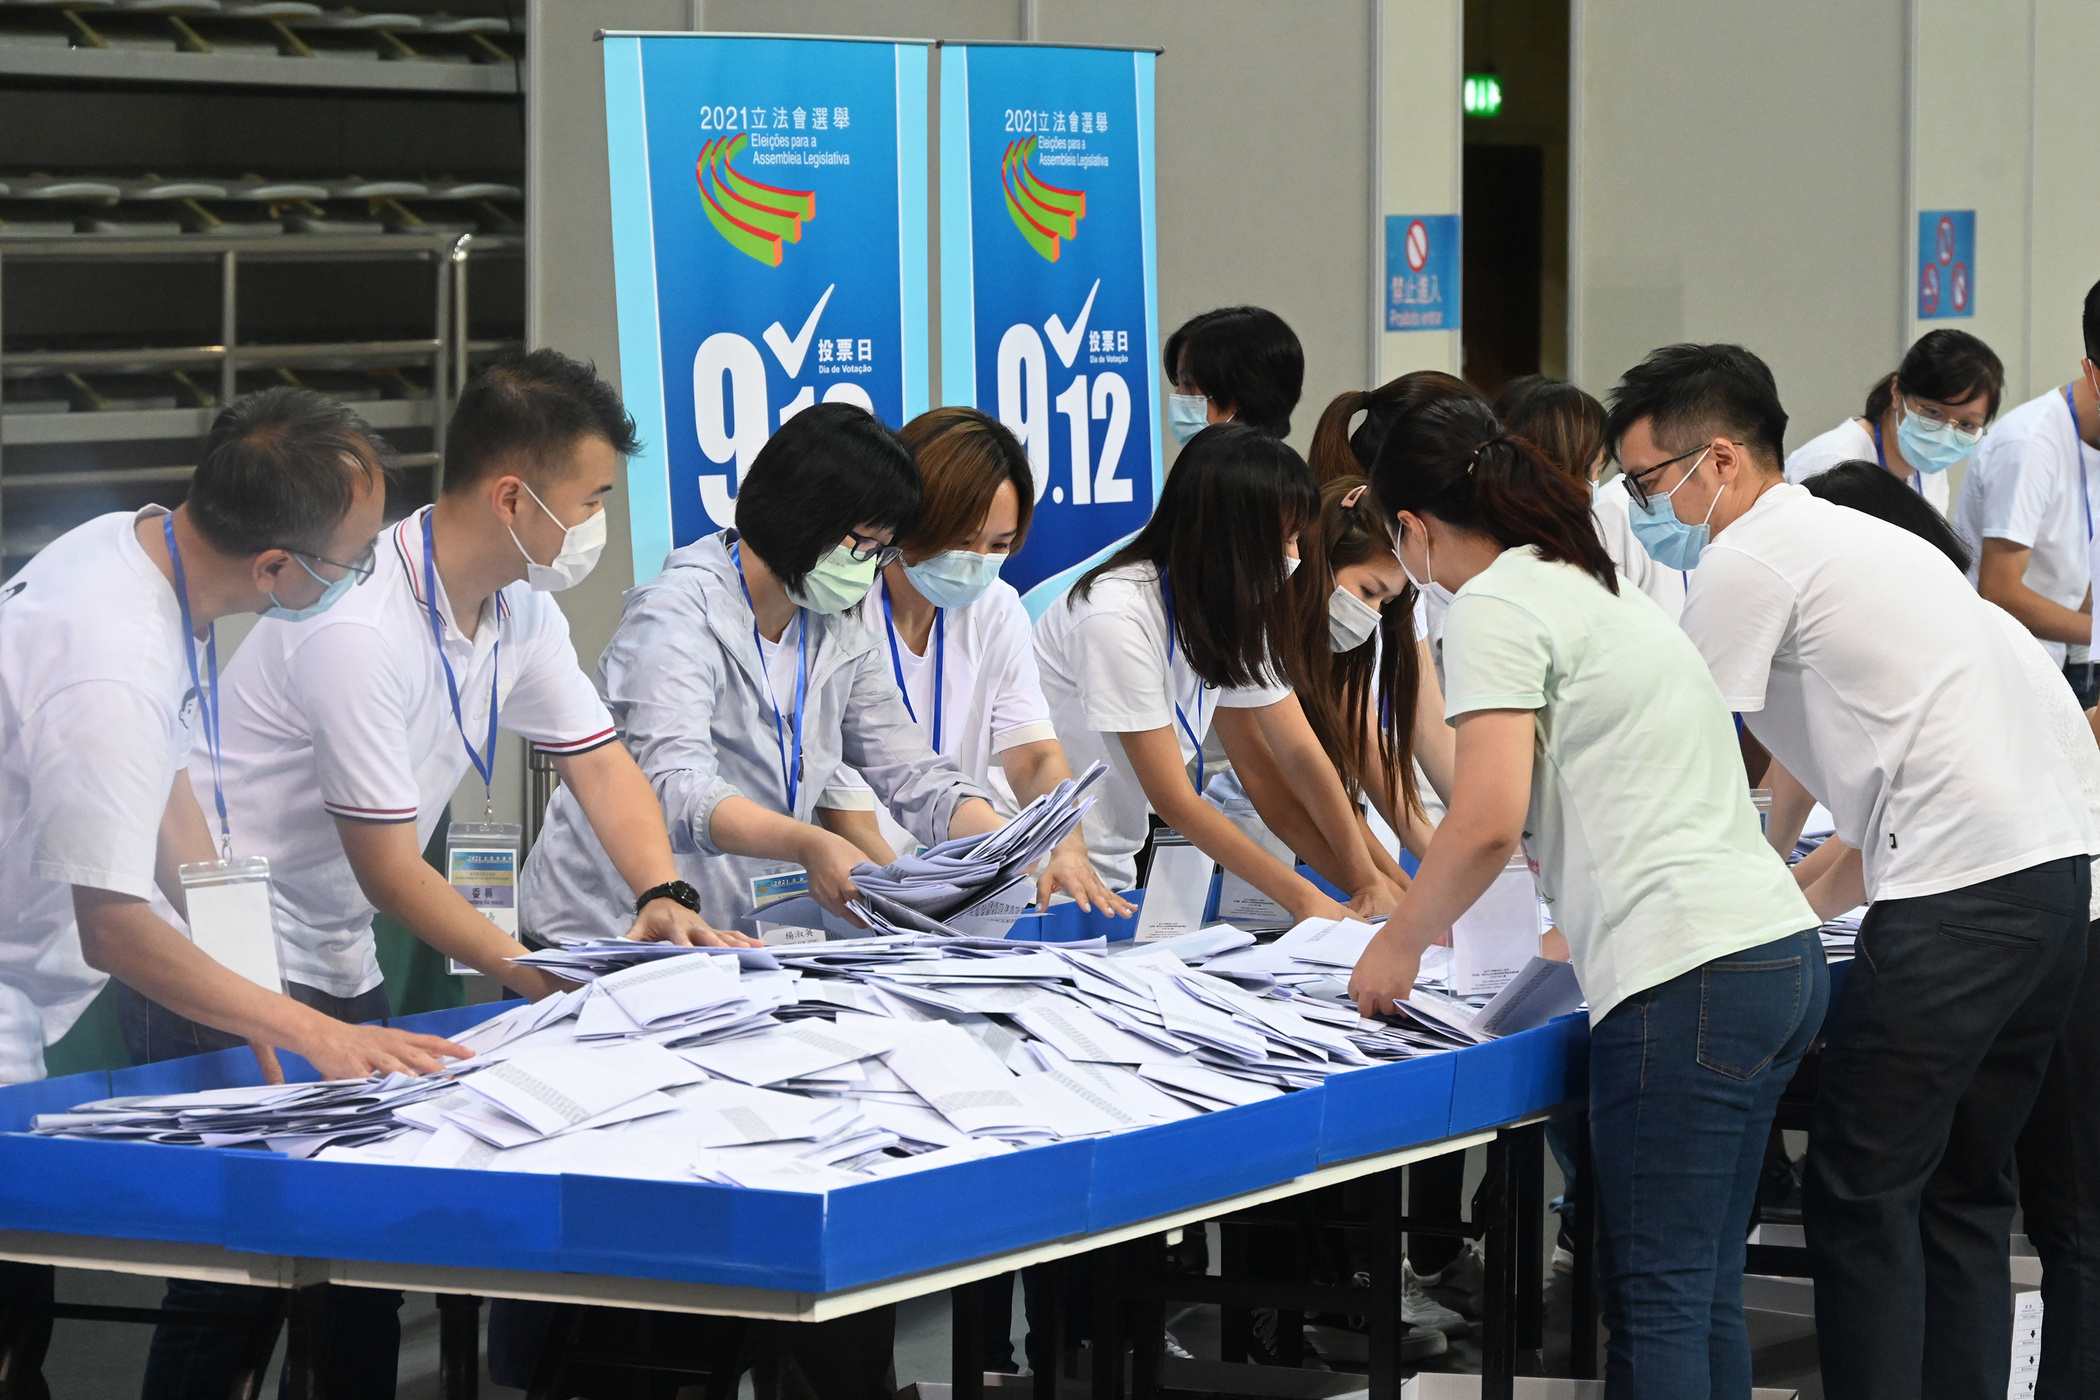 Eleições | Abstenção atingiu valor recorde em noite de vitória de Fujian